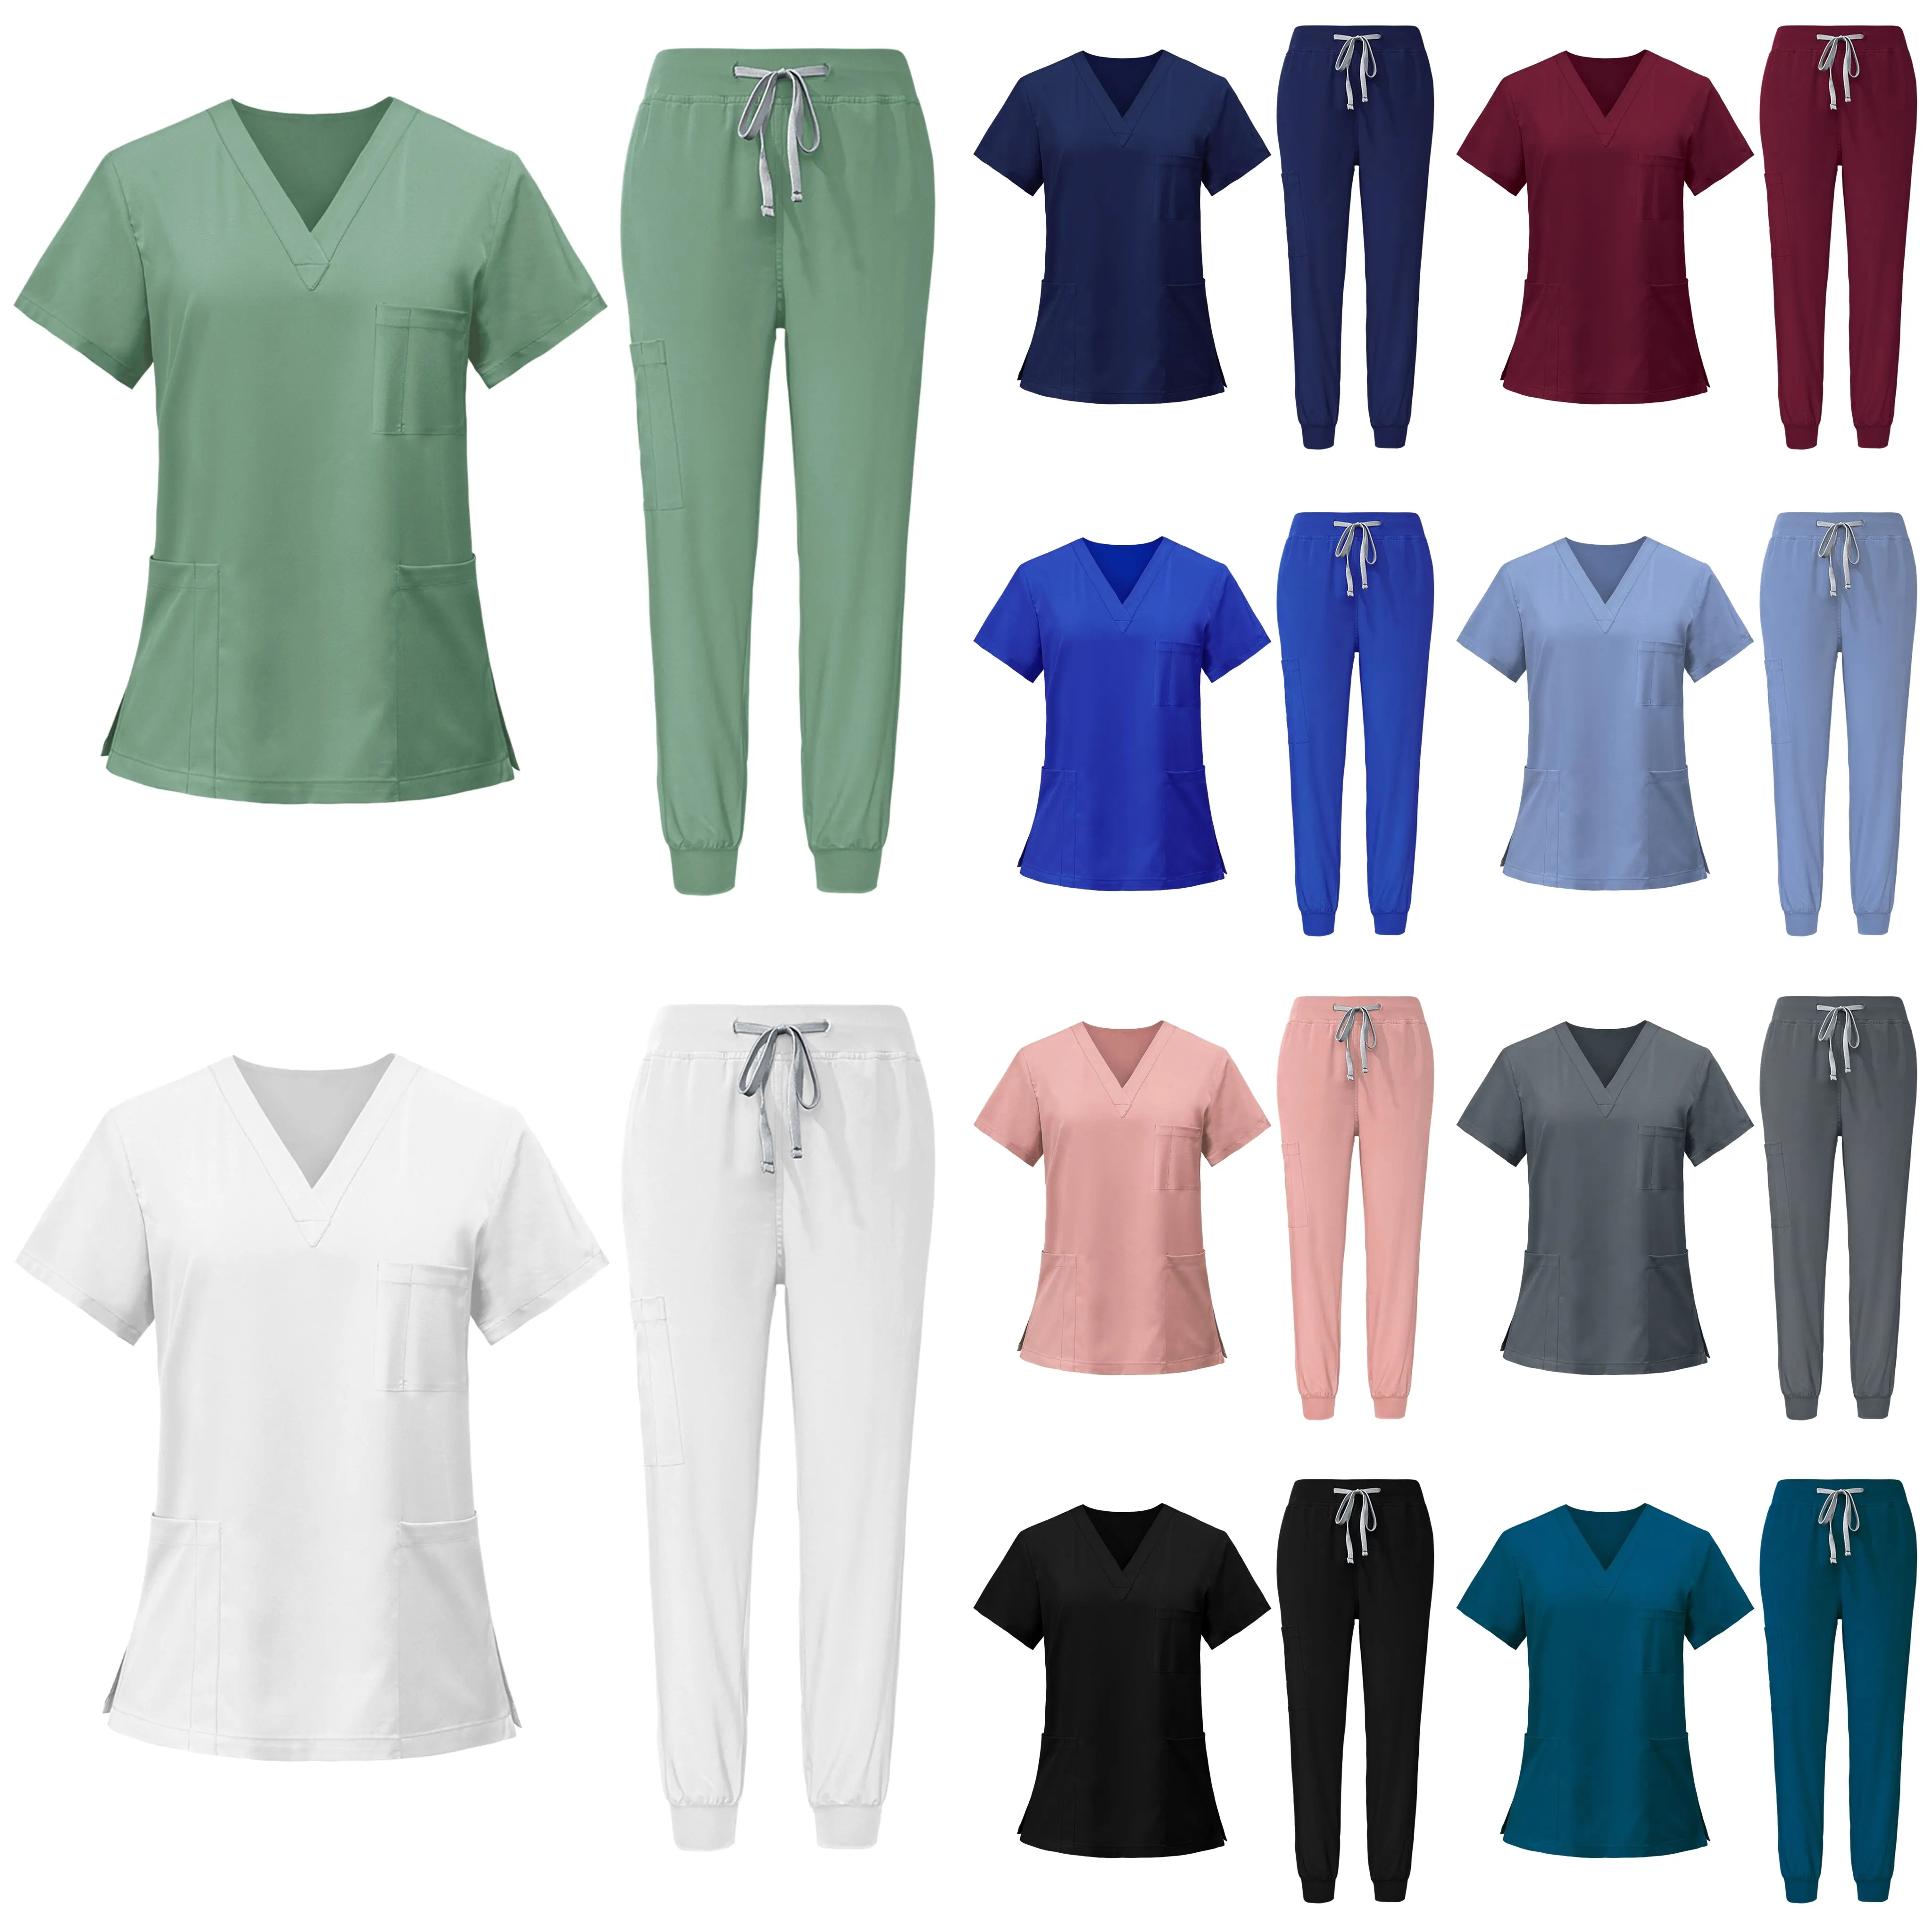 Hauts d'infirmière avec logo personnalisé OEM, combinaison de jogging, tissu non tissé extensible pour le travail, ensembles de blouses d'allaitement pour hommes et femmes, uniformes d'infirmières hospitalières